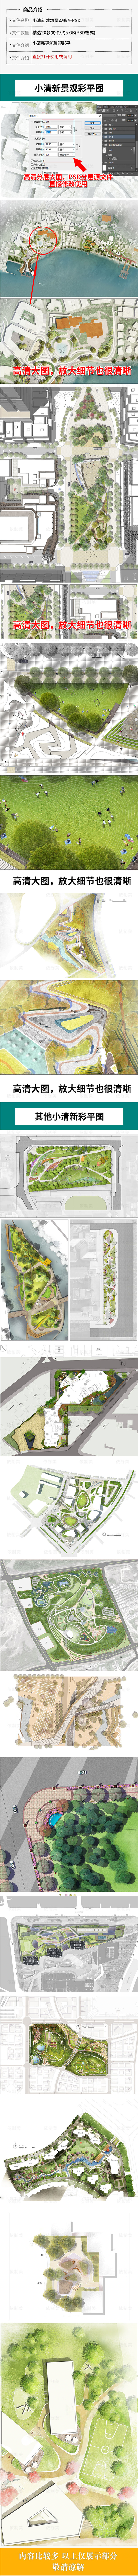 20款小清新建筑景观平面 总平面图PSD分成 公园广场设计竞赛ps素材 设计素材 第2张